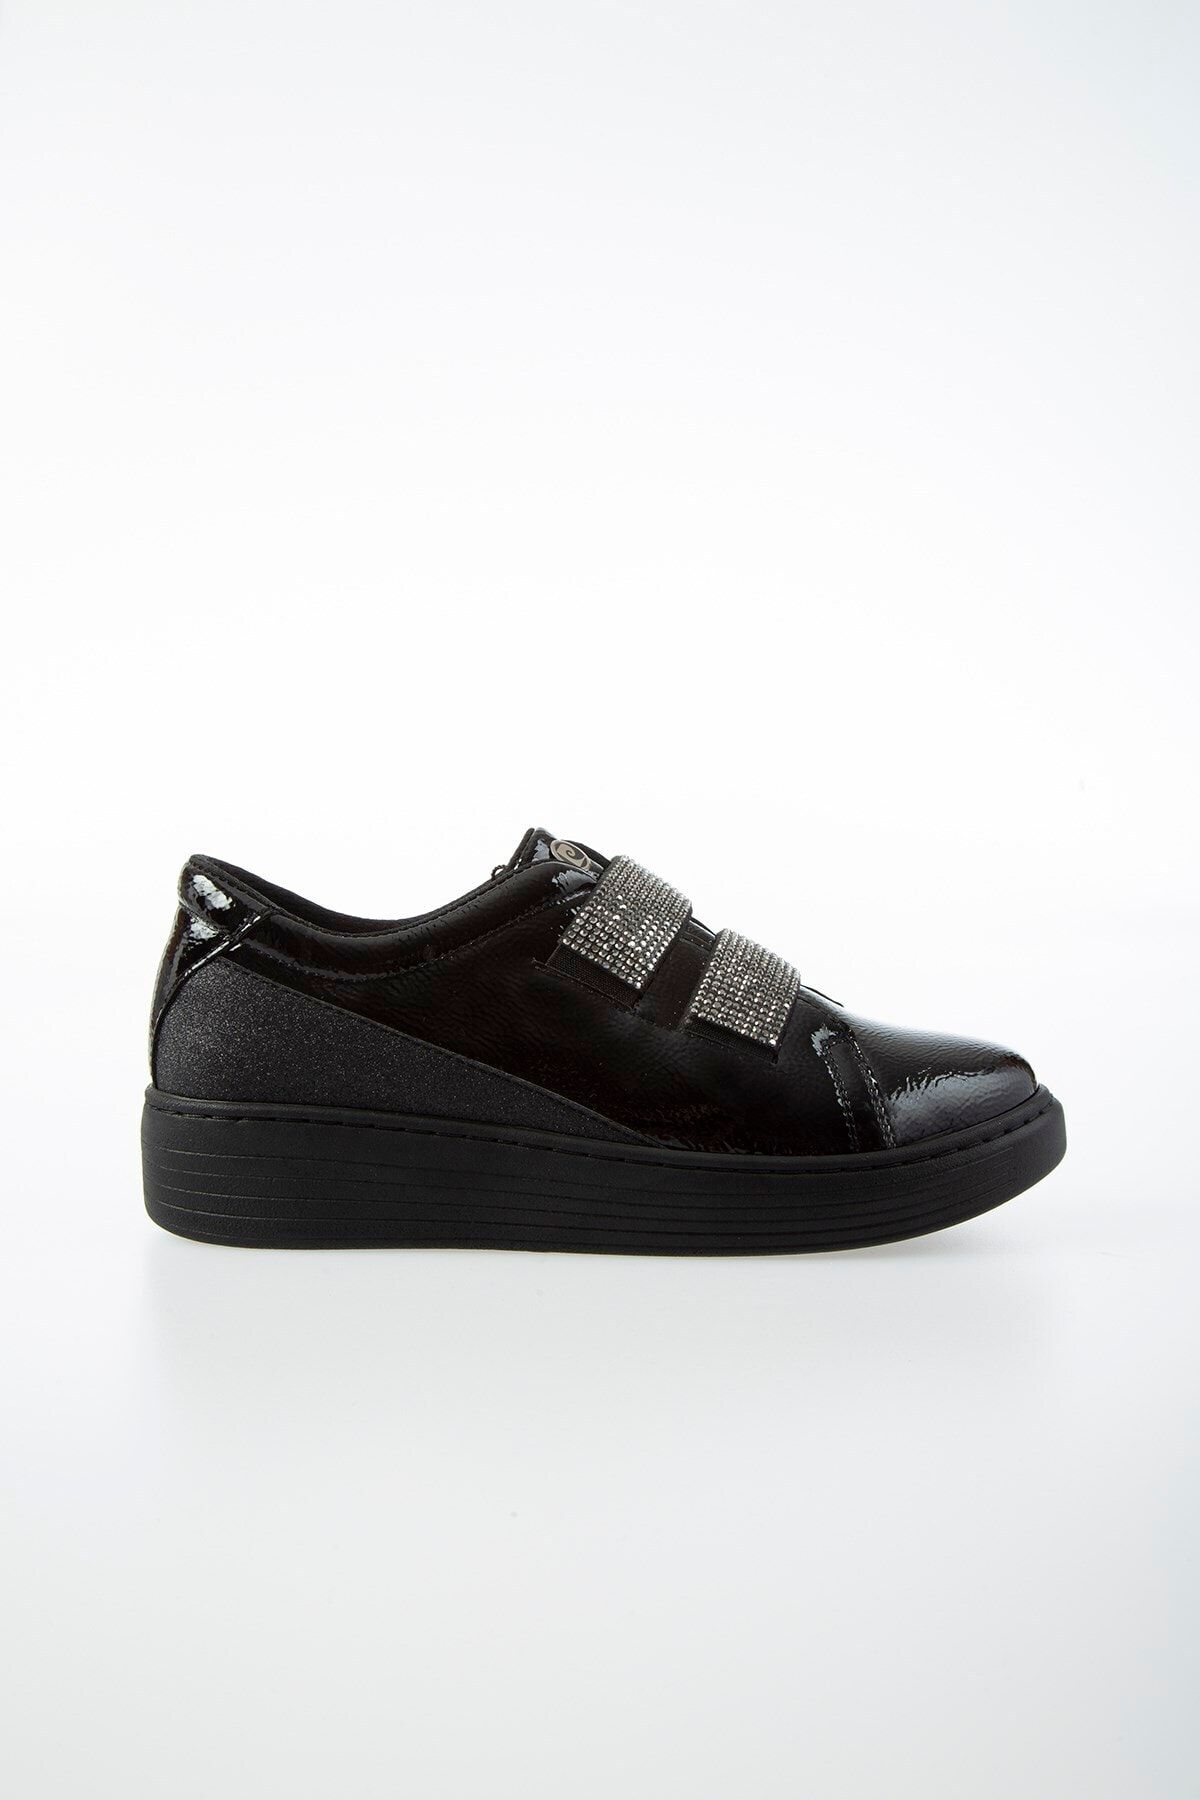 Pierre Cardin Pc-50804 Parlak Siyah Kadın Ayakkabı